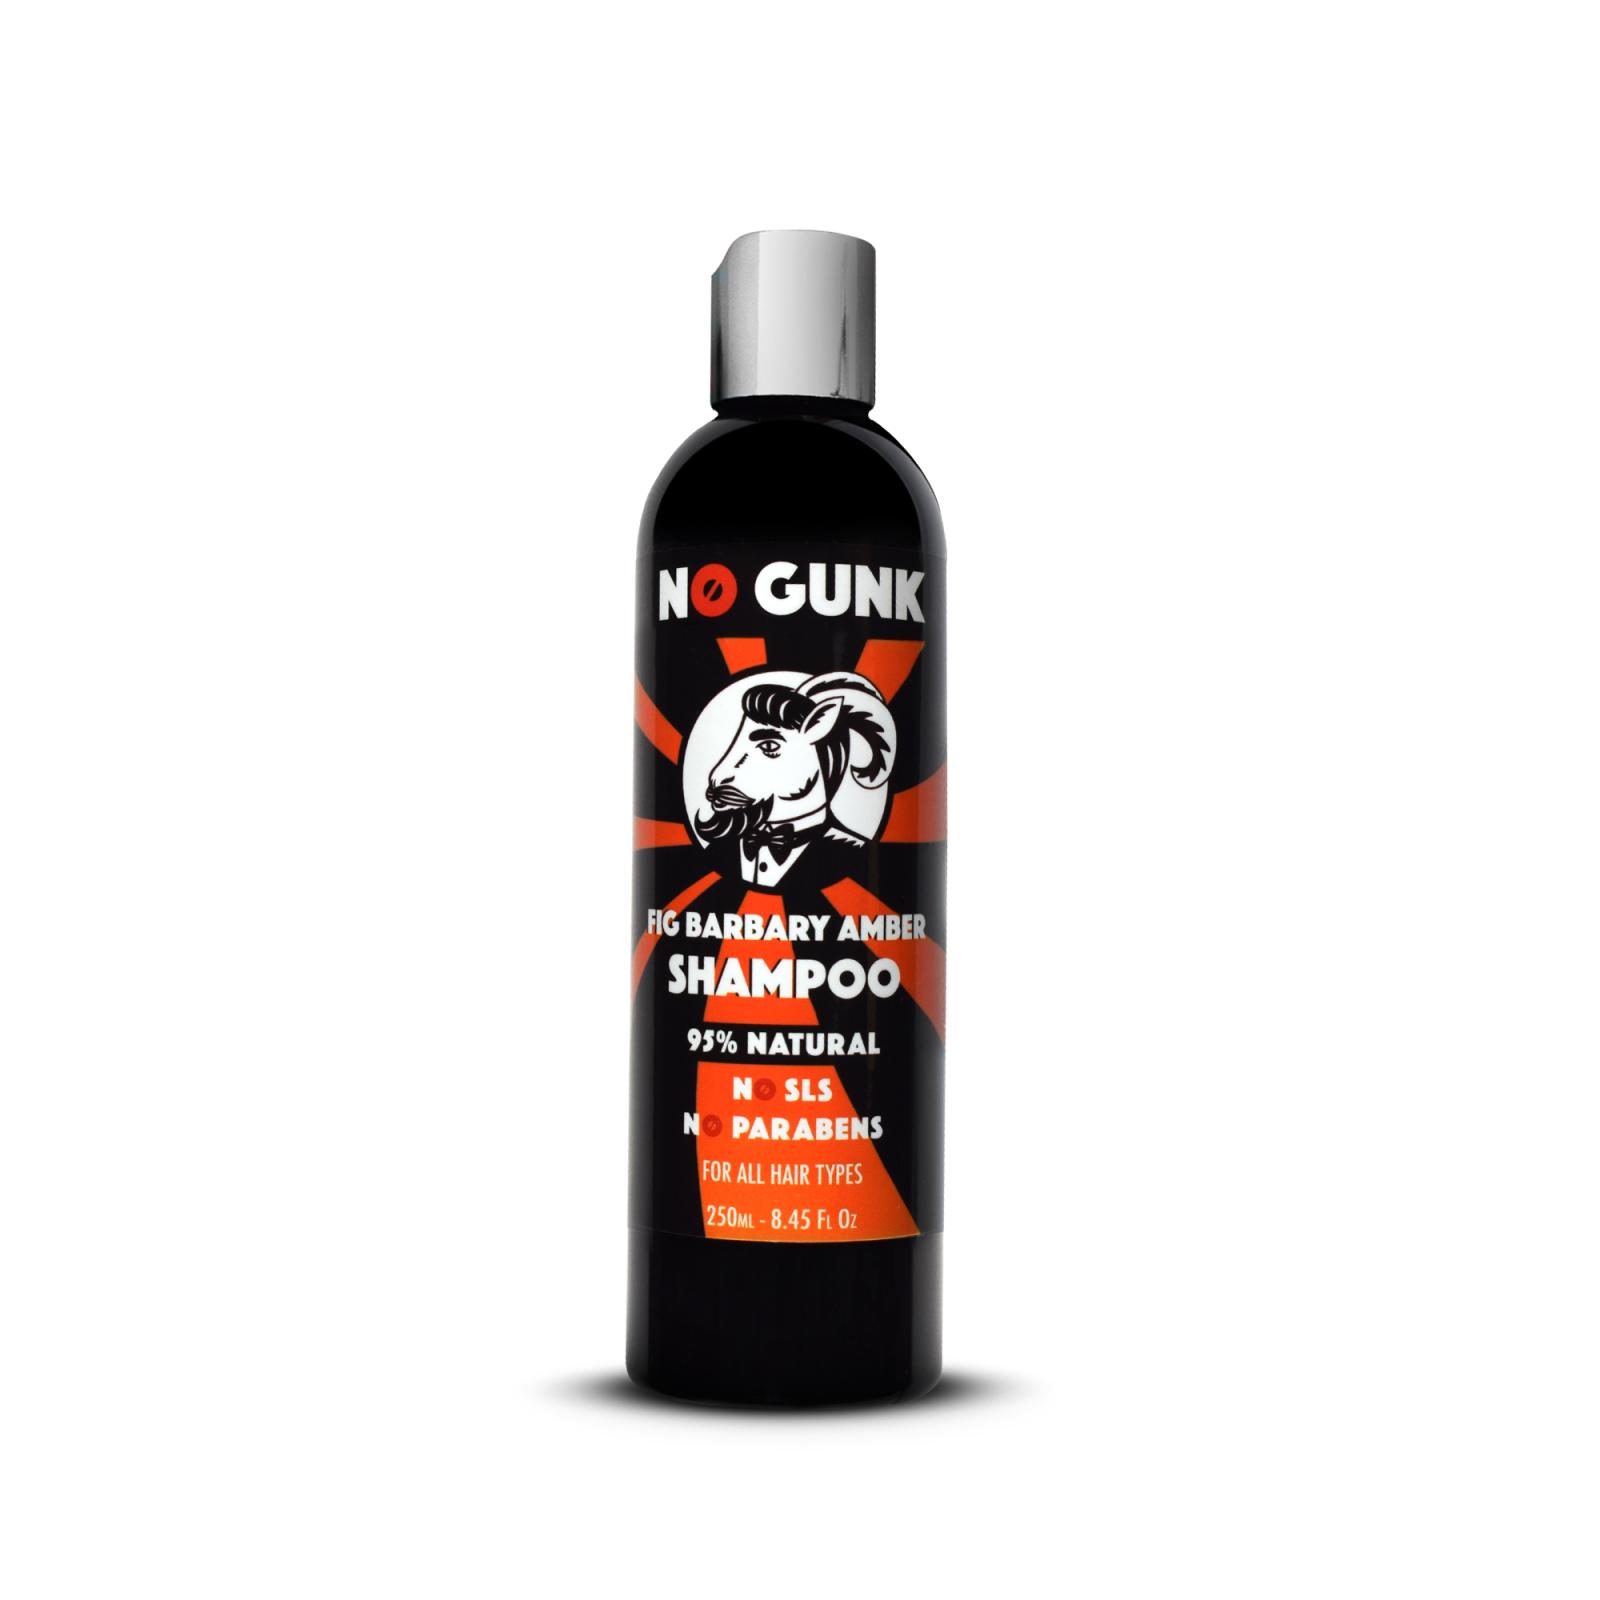 NO GUNK Fig Barbary šampon - Amber 250ml